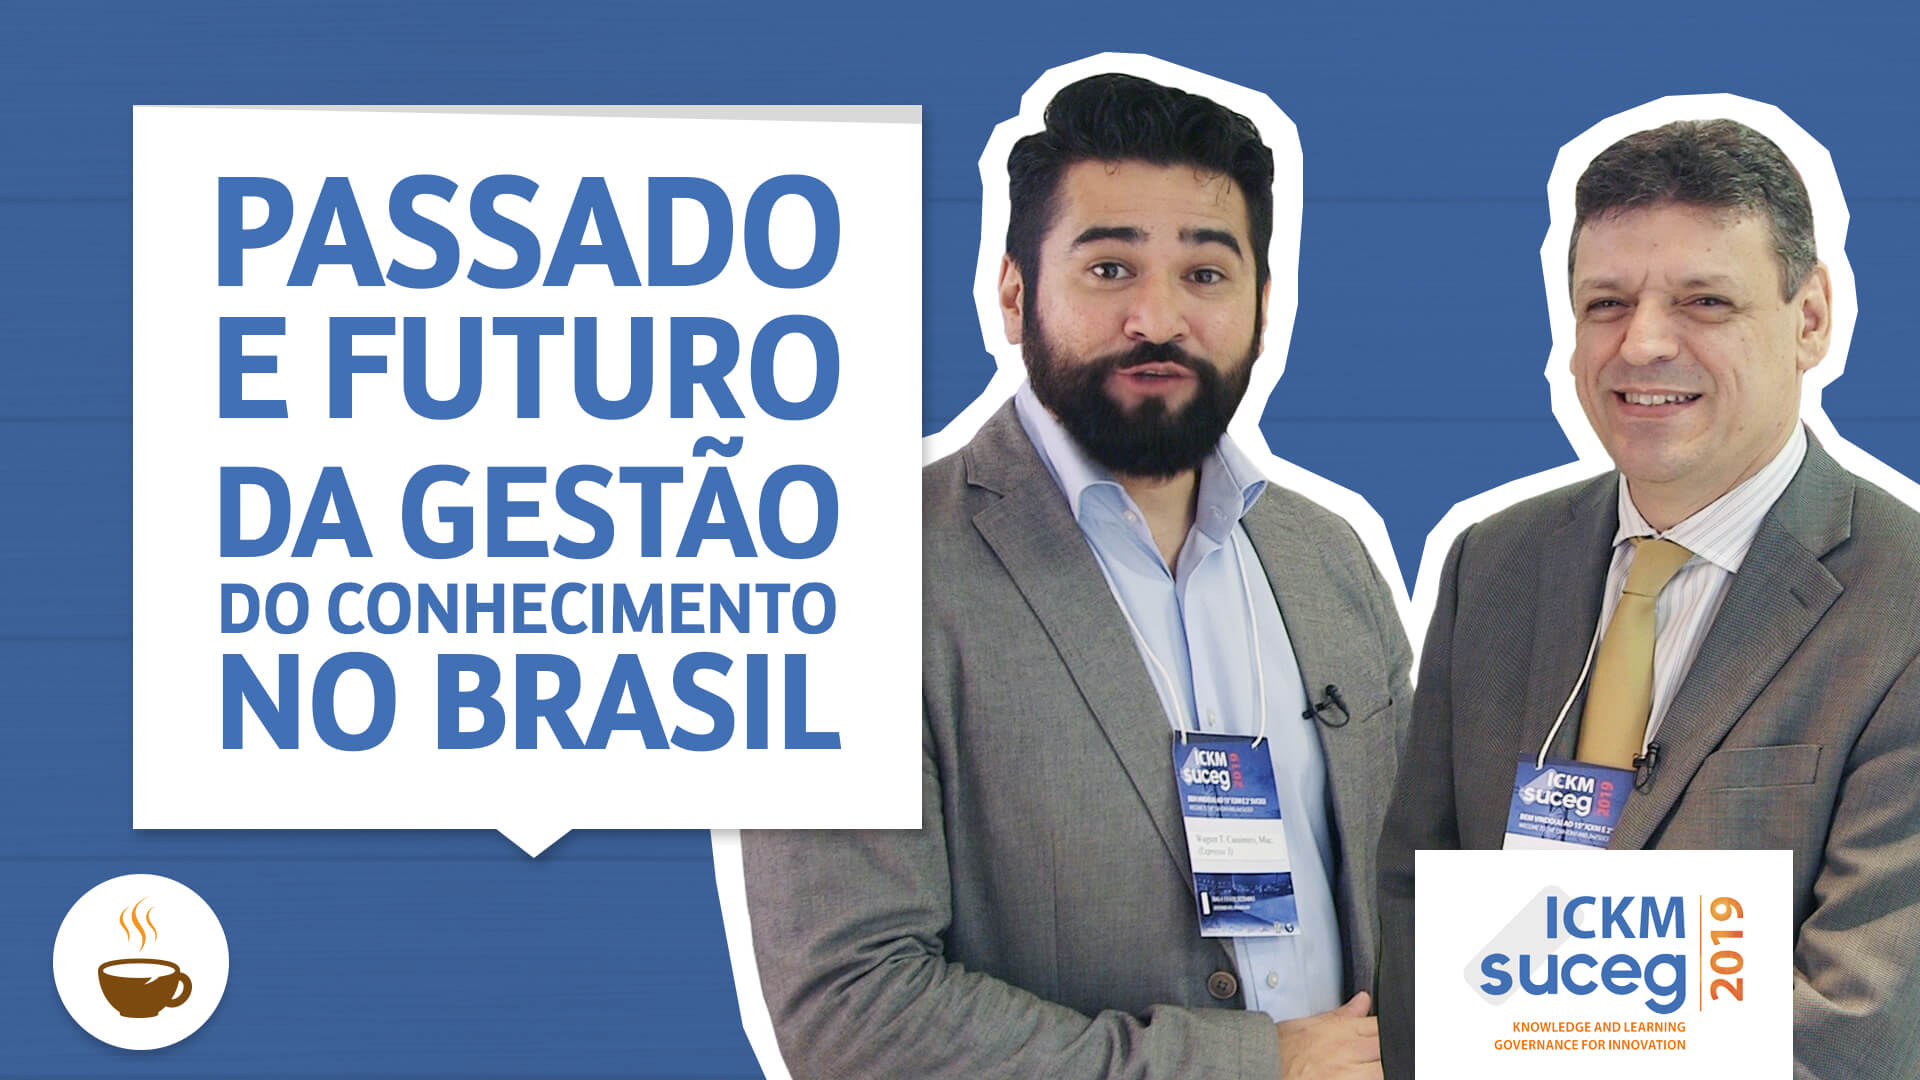 Prof. Wagner Cassimiro conversa com Roberto sobre Passado e futuro da gestão do conhecimento no Brasil - Série ICKM SUCEG 2019